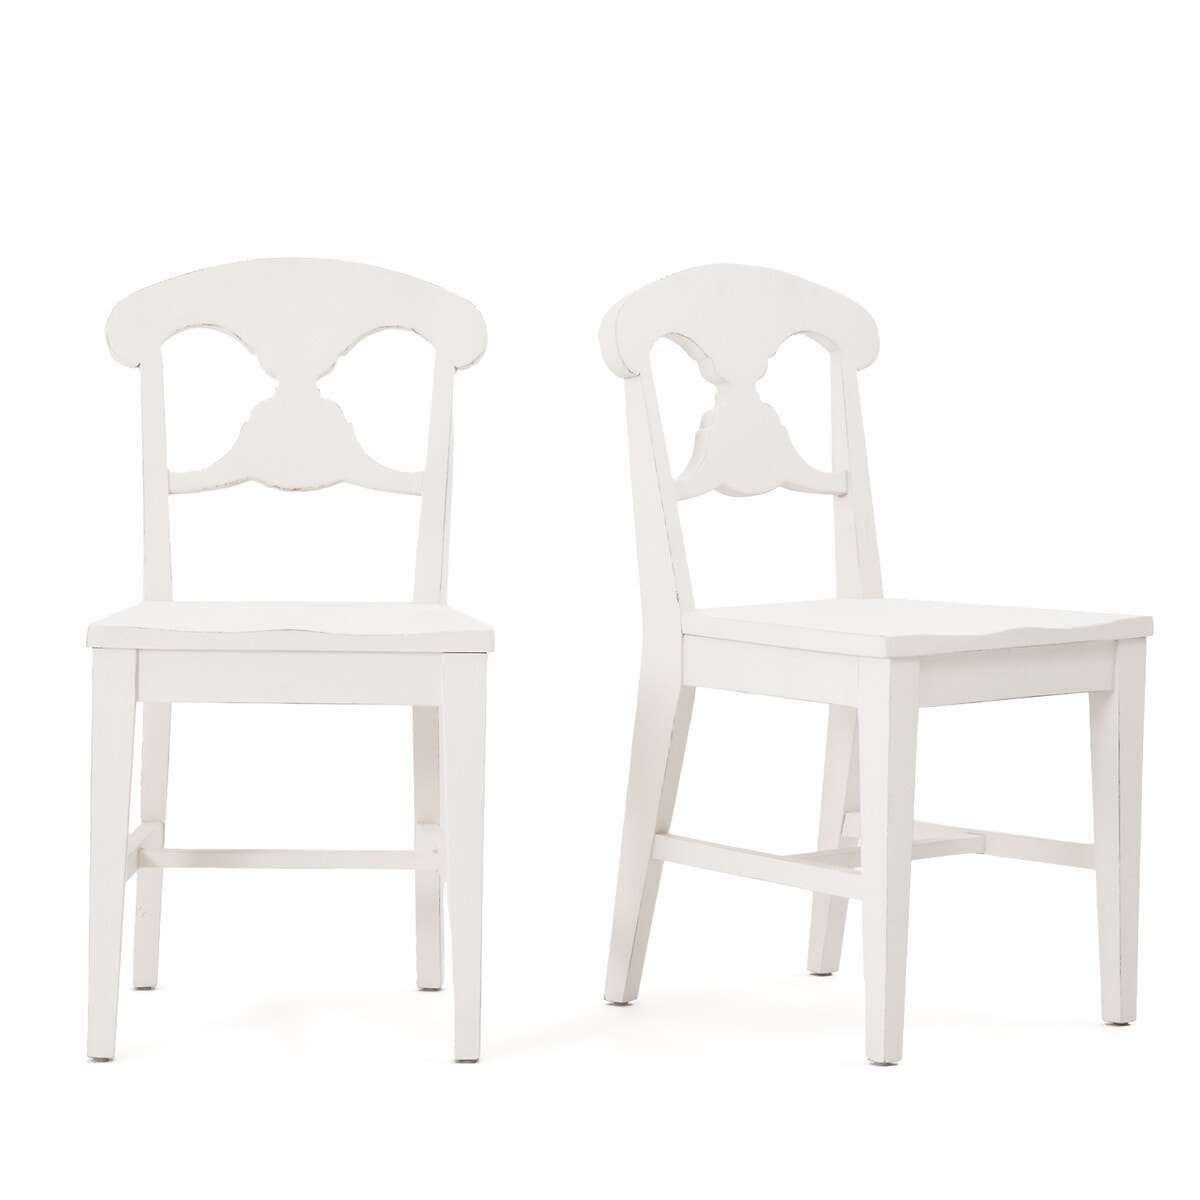 Σπίτι > Έπιπλα > Τραπεζαρία > Καρέκλες, σκαμπό, πάγκοι > Καρέκλες Σετ 2 καρέκλες με παλαιωμένη όψη